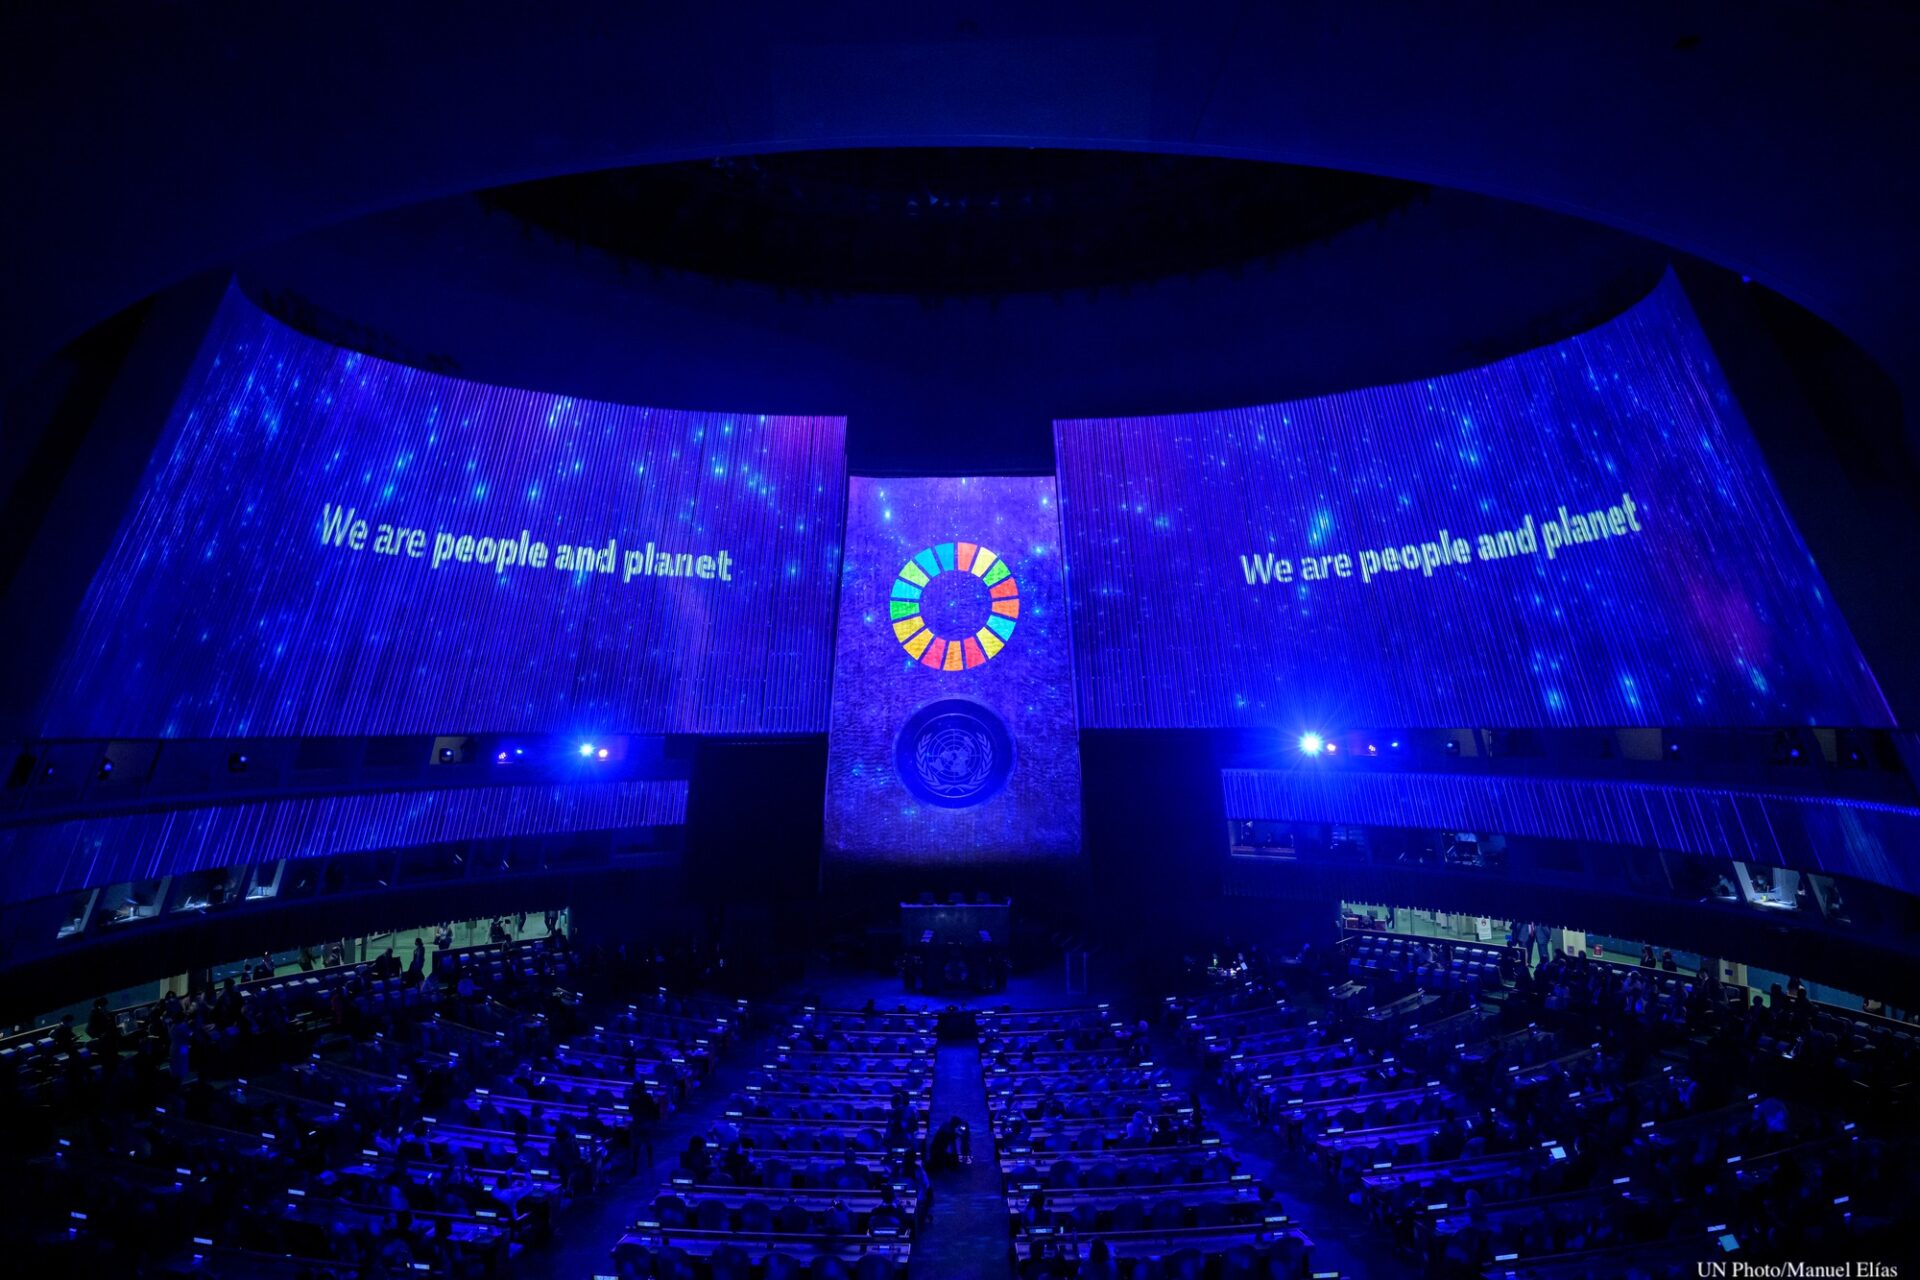 UN ermutigt Plattformen und Regierungen, Narrativen entgegenzuwirken, die „den Fortschritt bei den SDGs gefährden“.